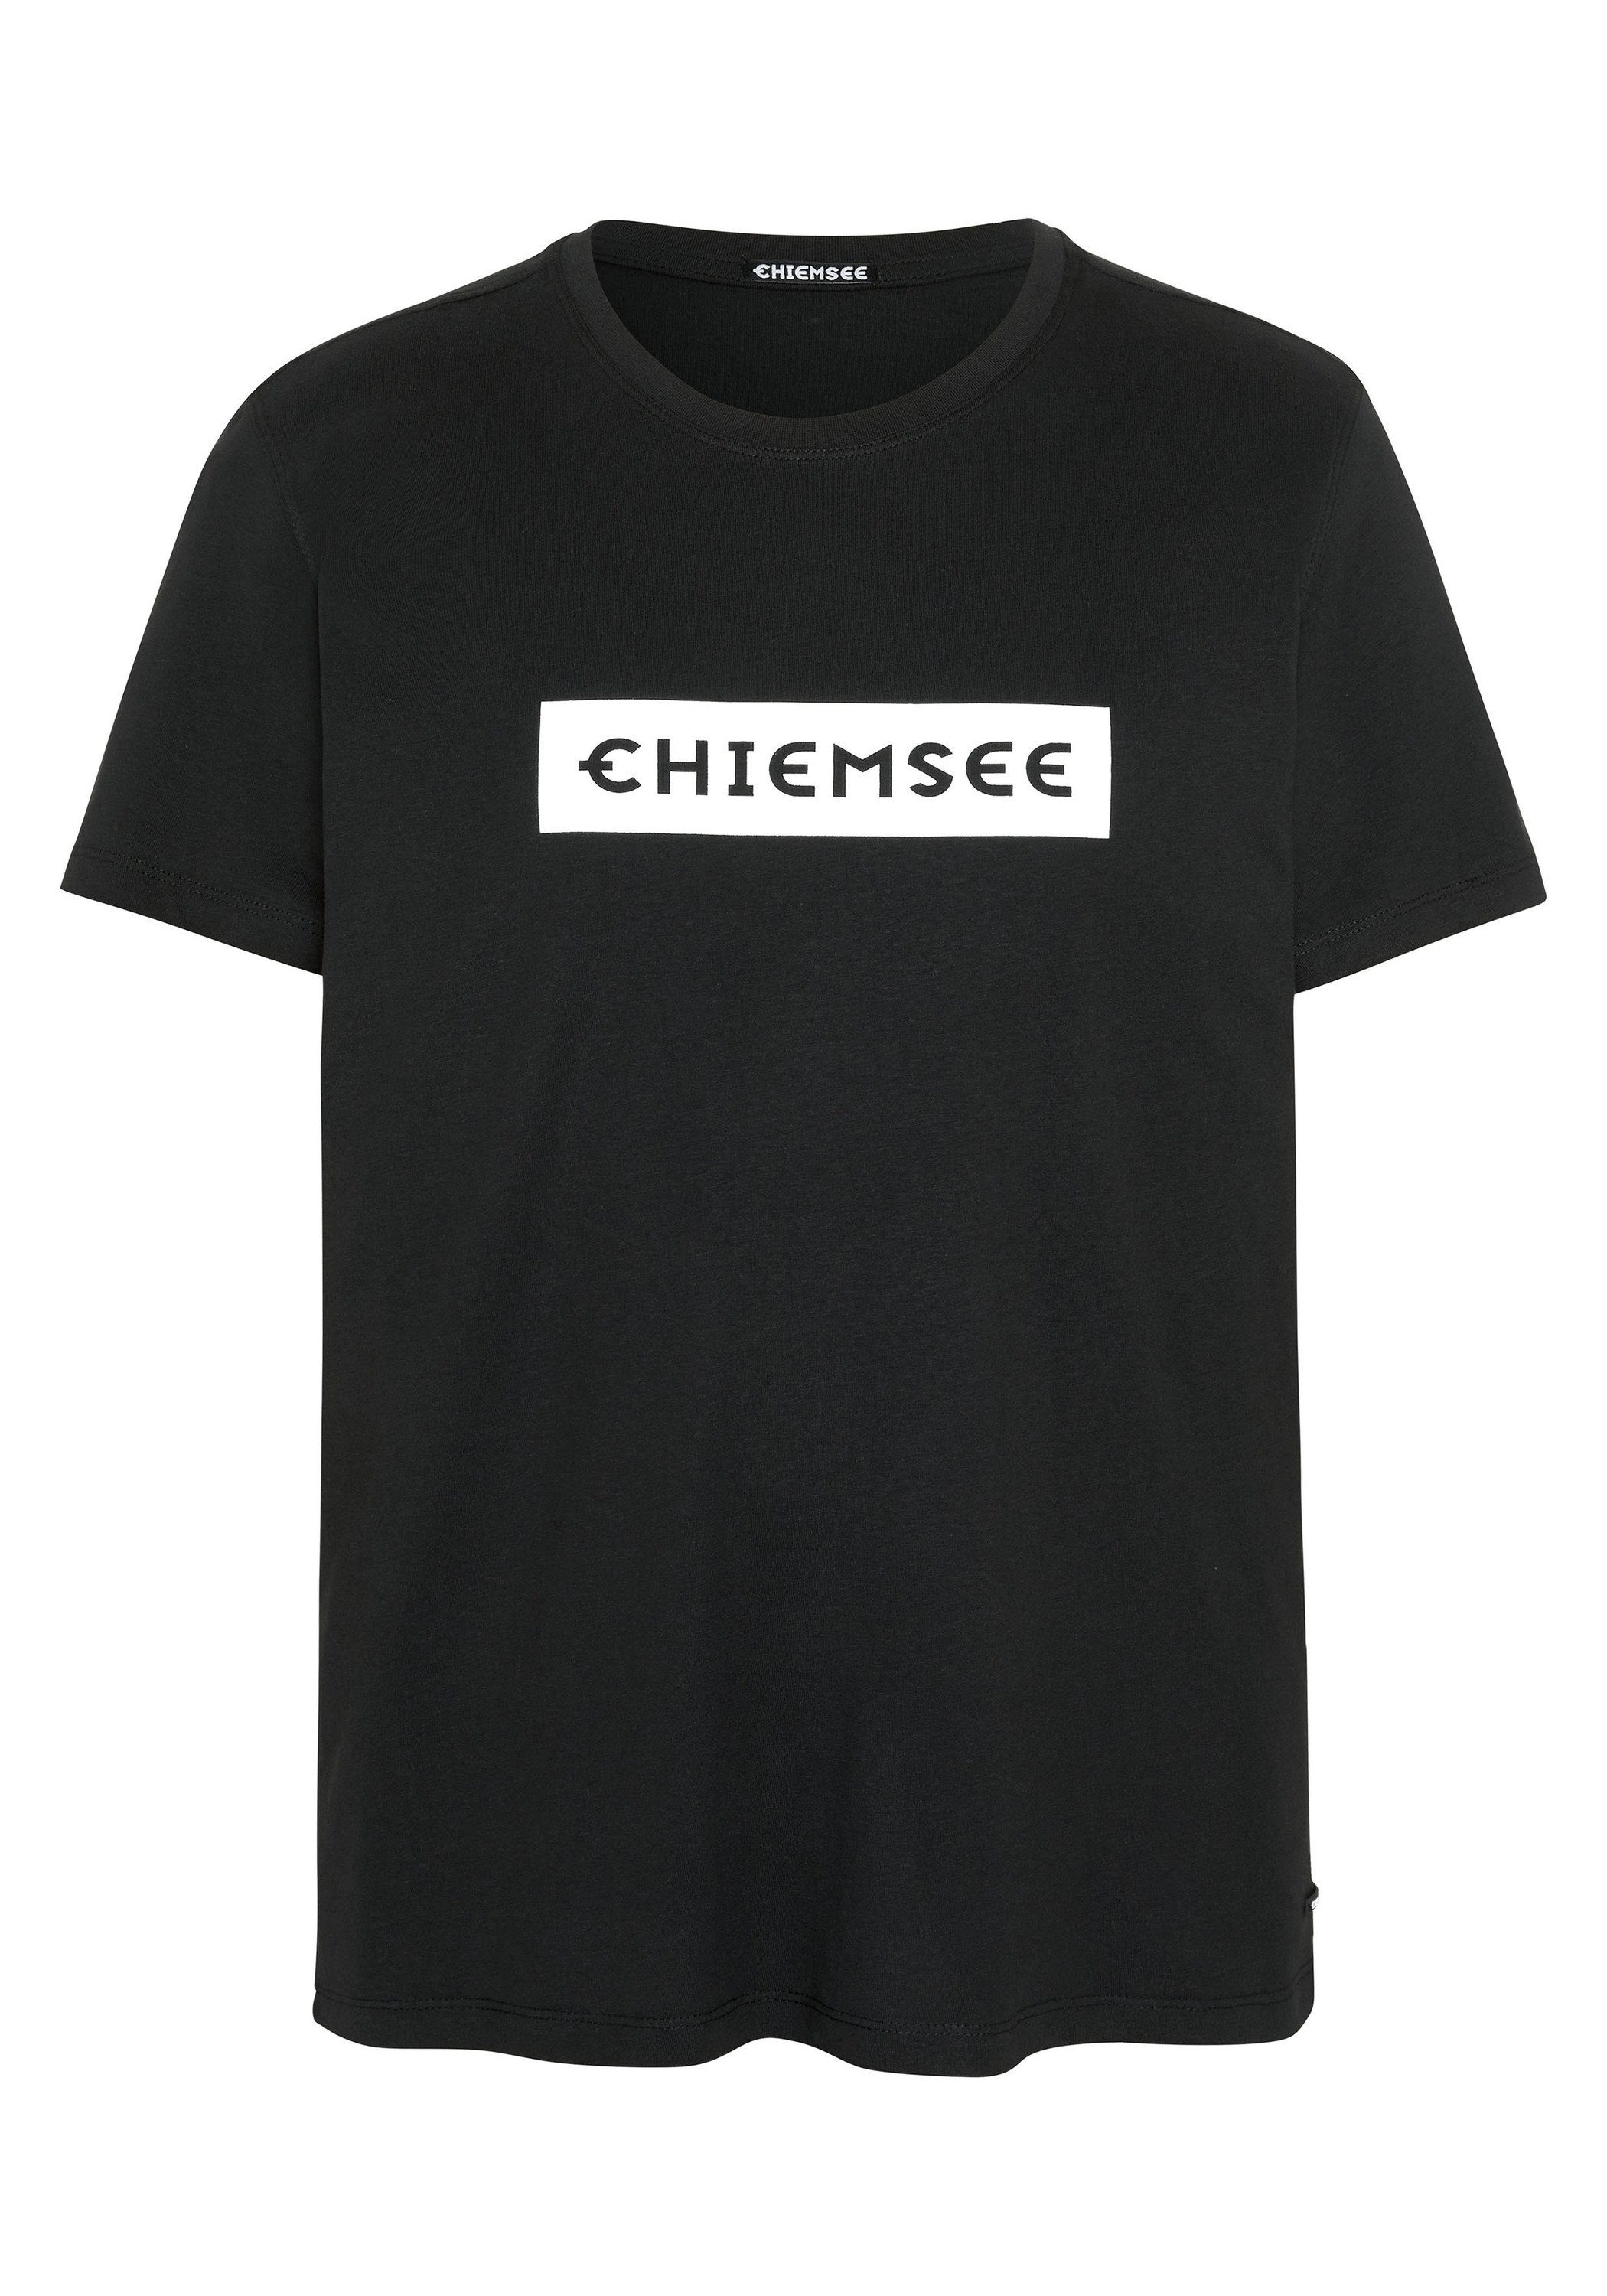 Chiemsee Print-Shirt T-Shirt mit Label-Schriftzug 1 19-3911 Black Beauty